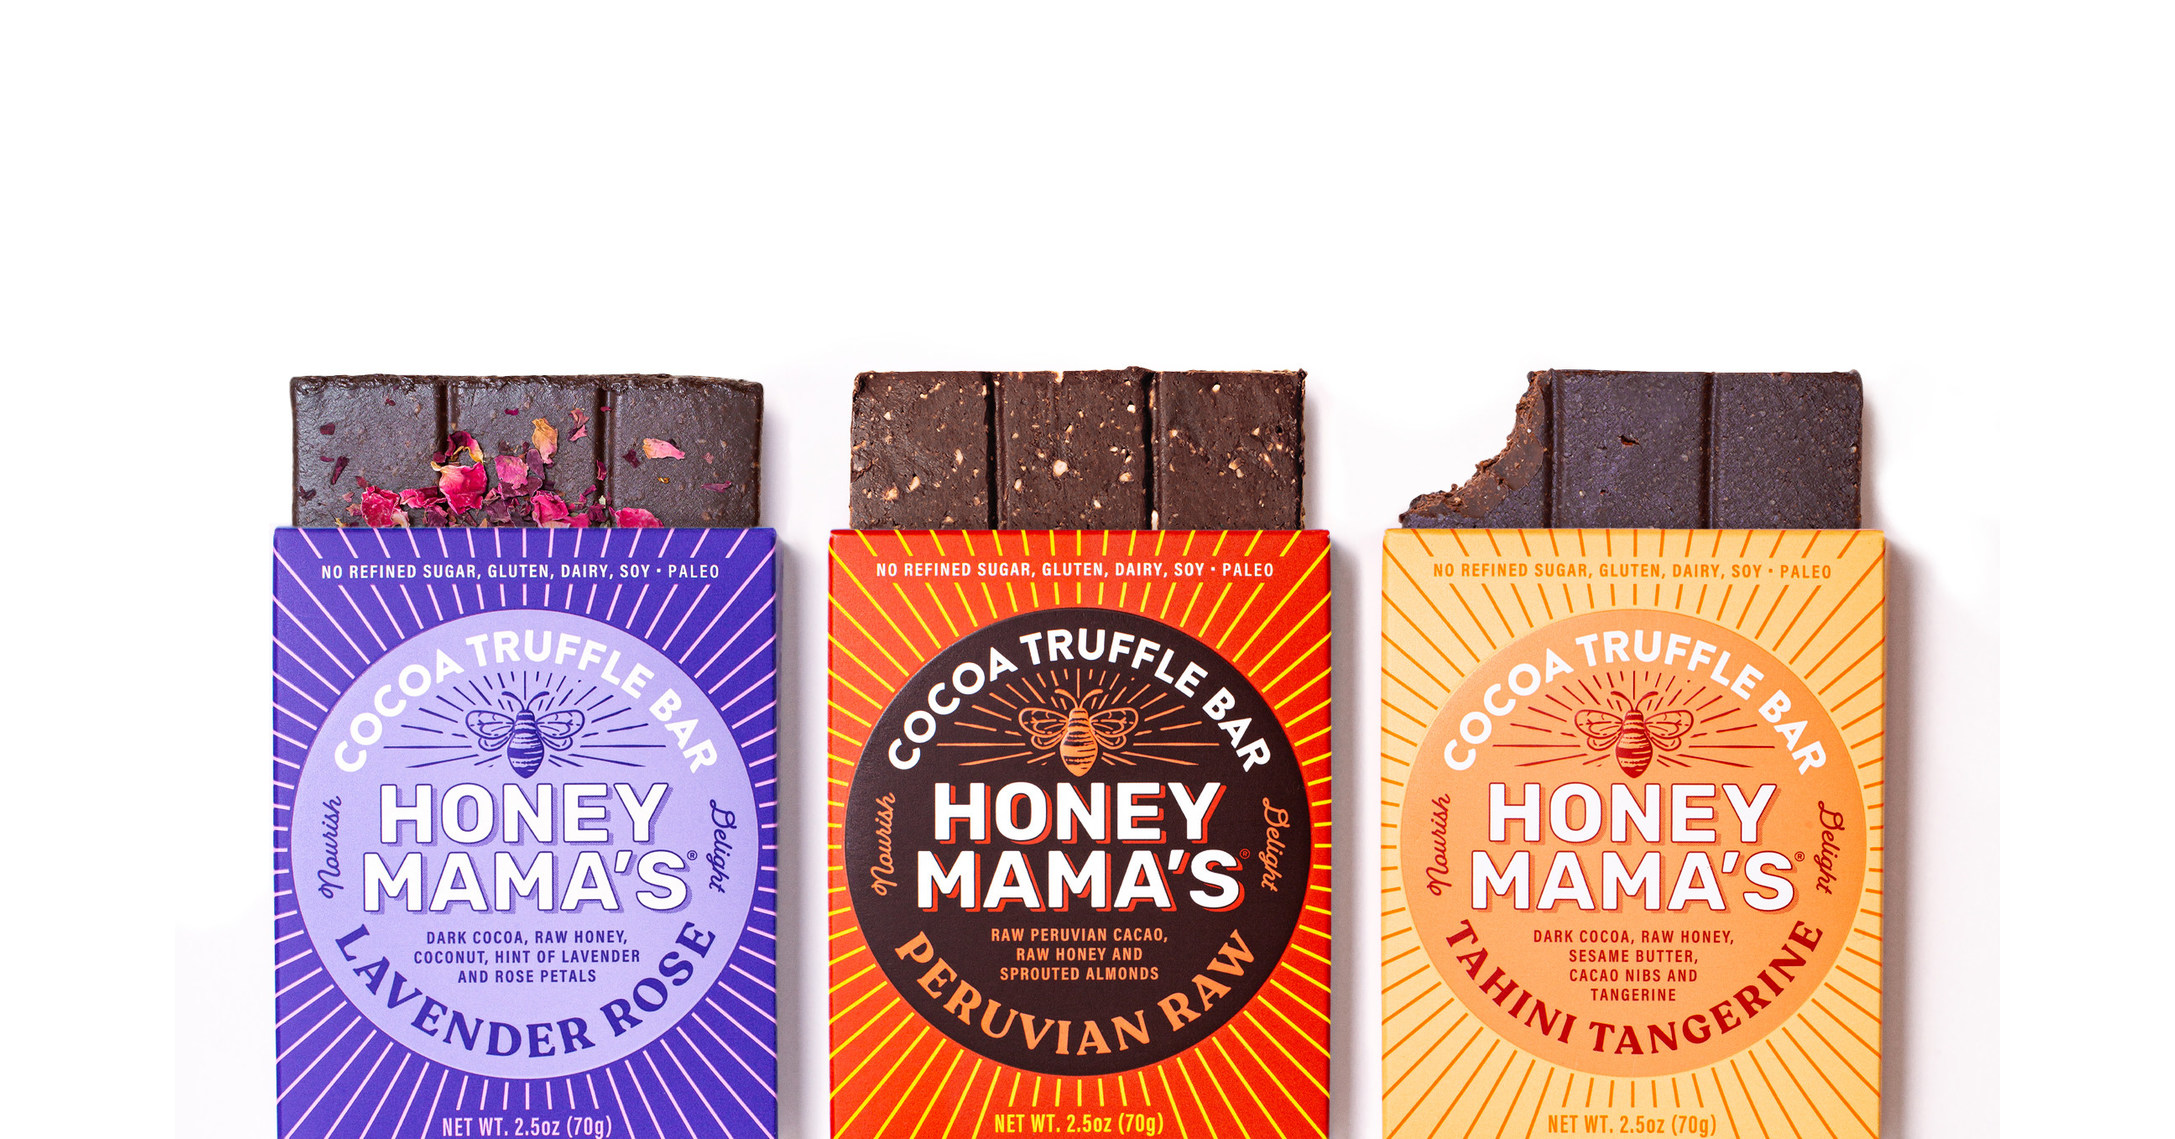 Honey Mama's introduces new Truffle Treats line